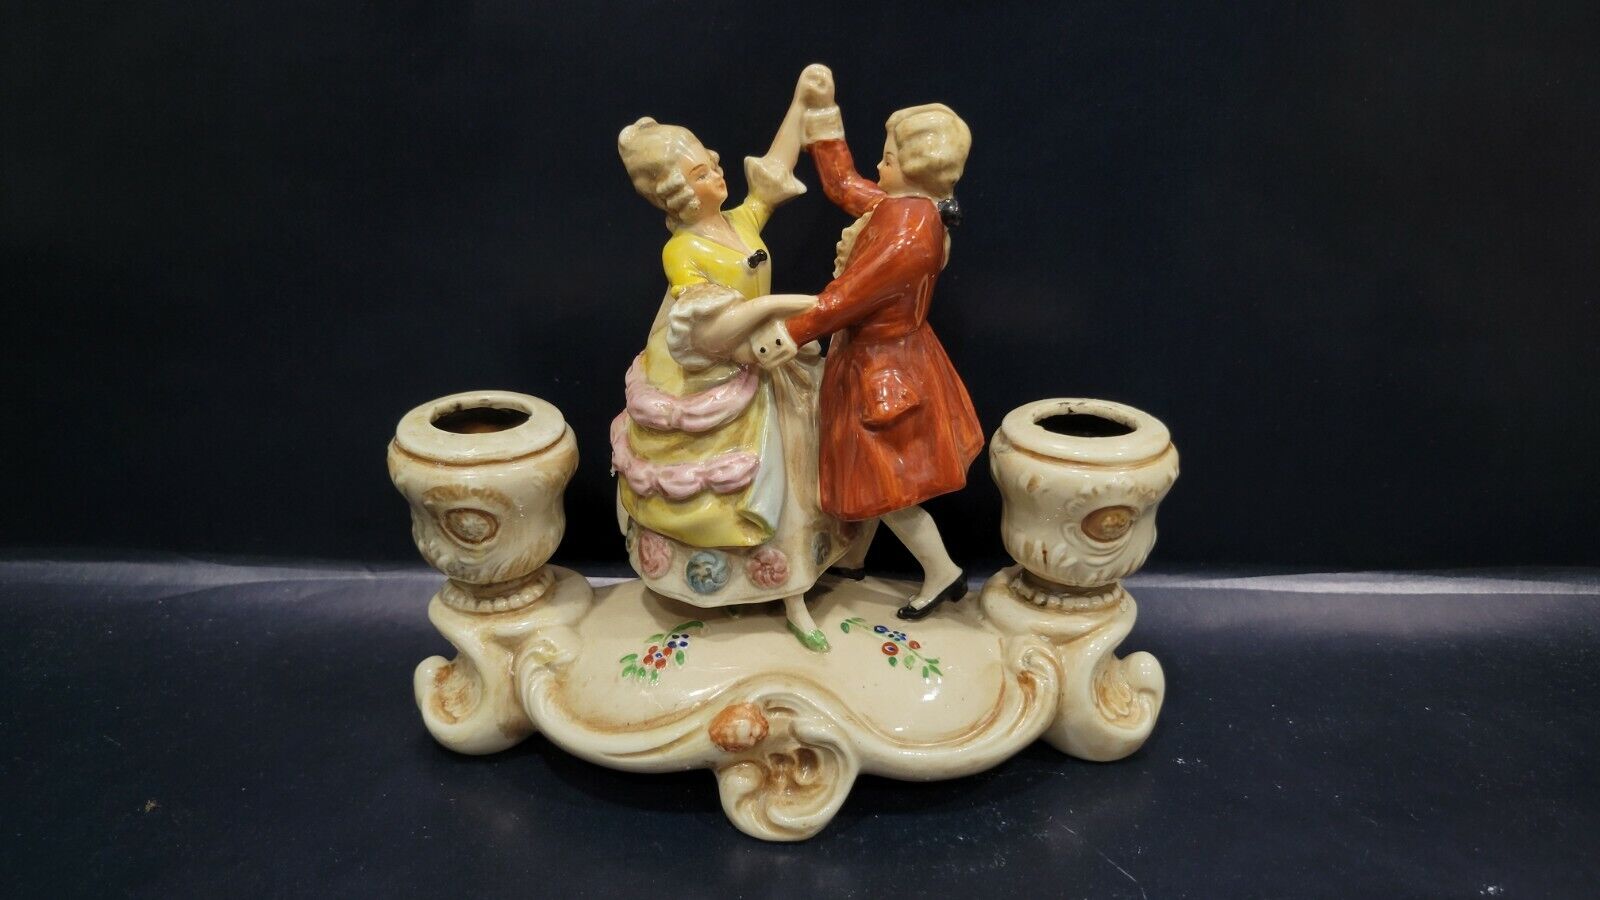 Vintage German Porcelain Candle Holder, Dancing Couple